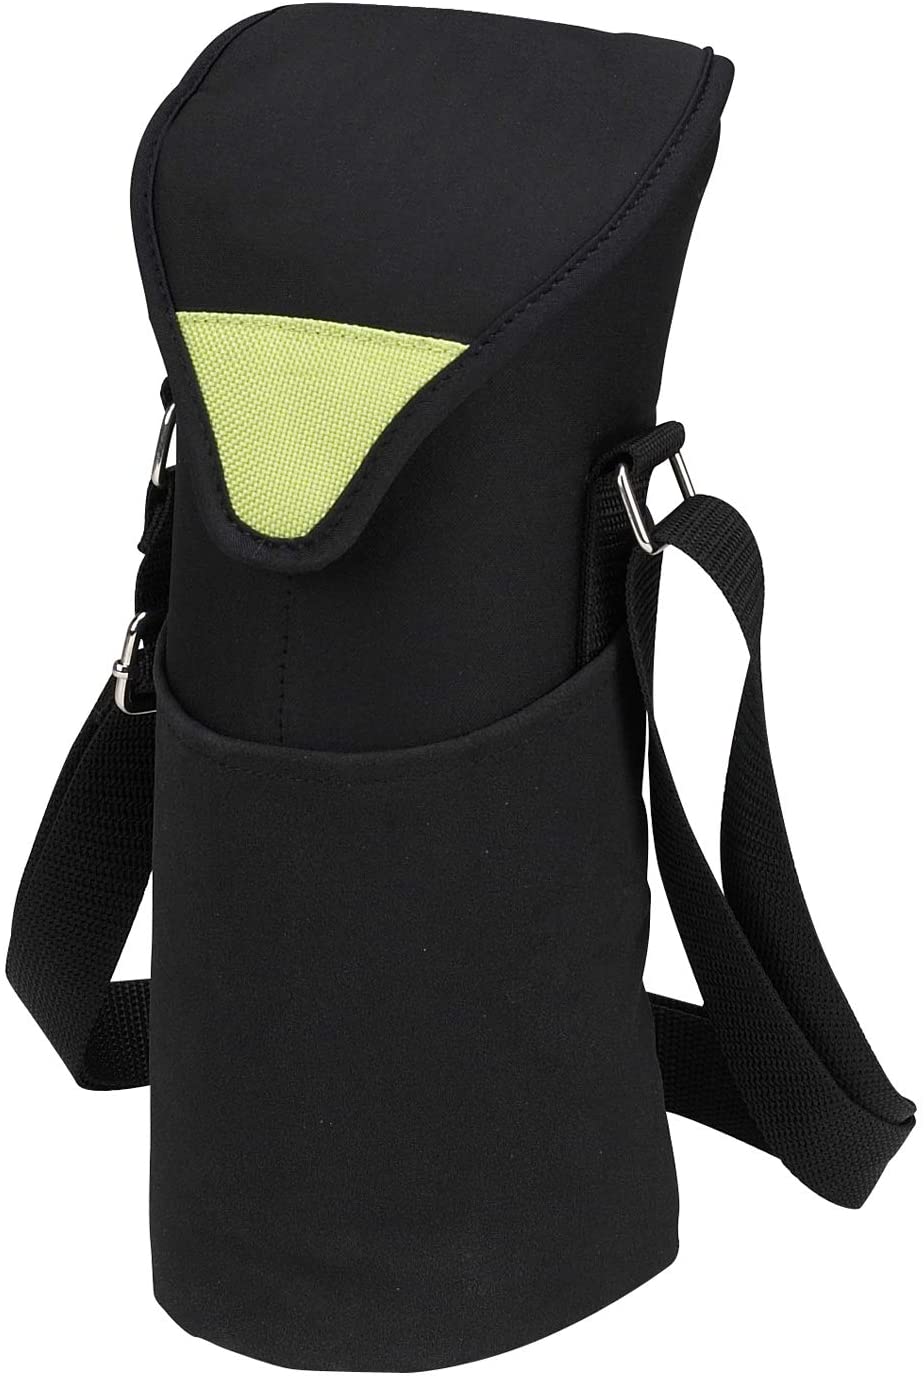 (D) Single Bottle Cooler Tote, Picnic Backpack Bag for Outdoor (Black Green)